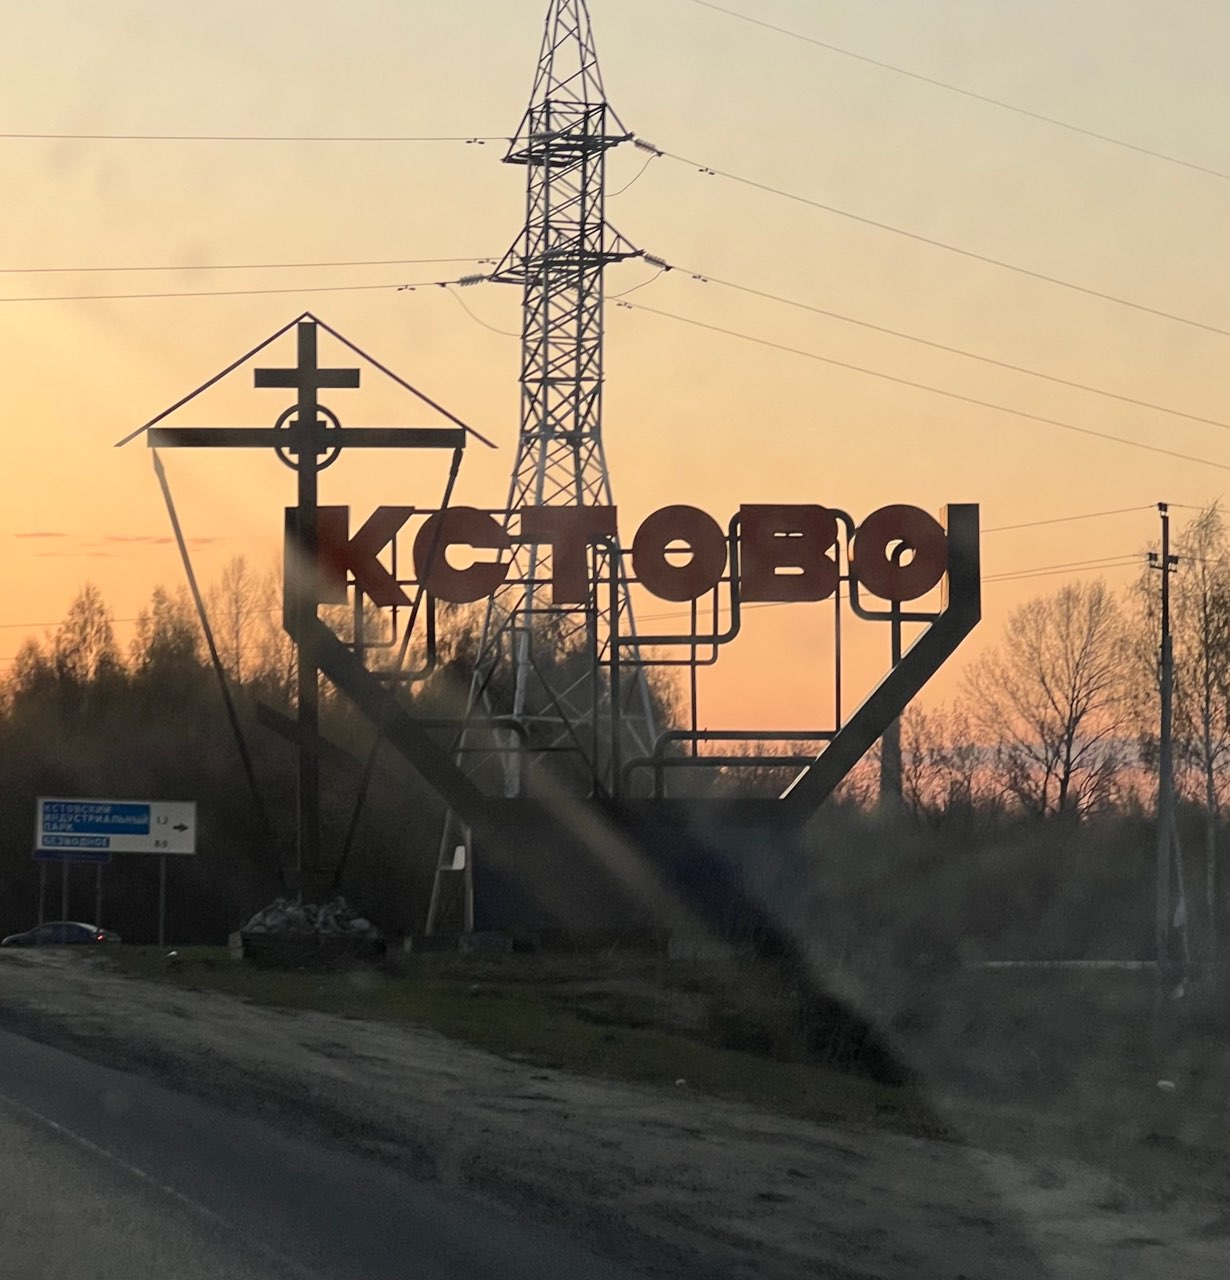 Транспортно-пересадочный узел построят в Кстово в Нижегородской области  - фото 1